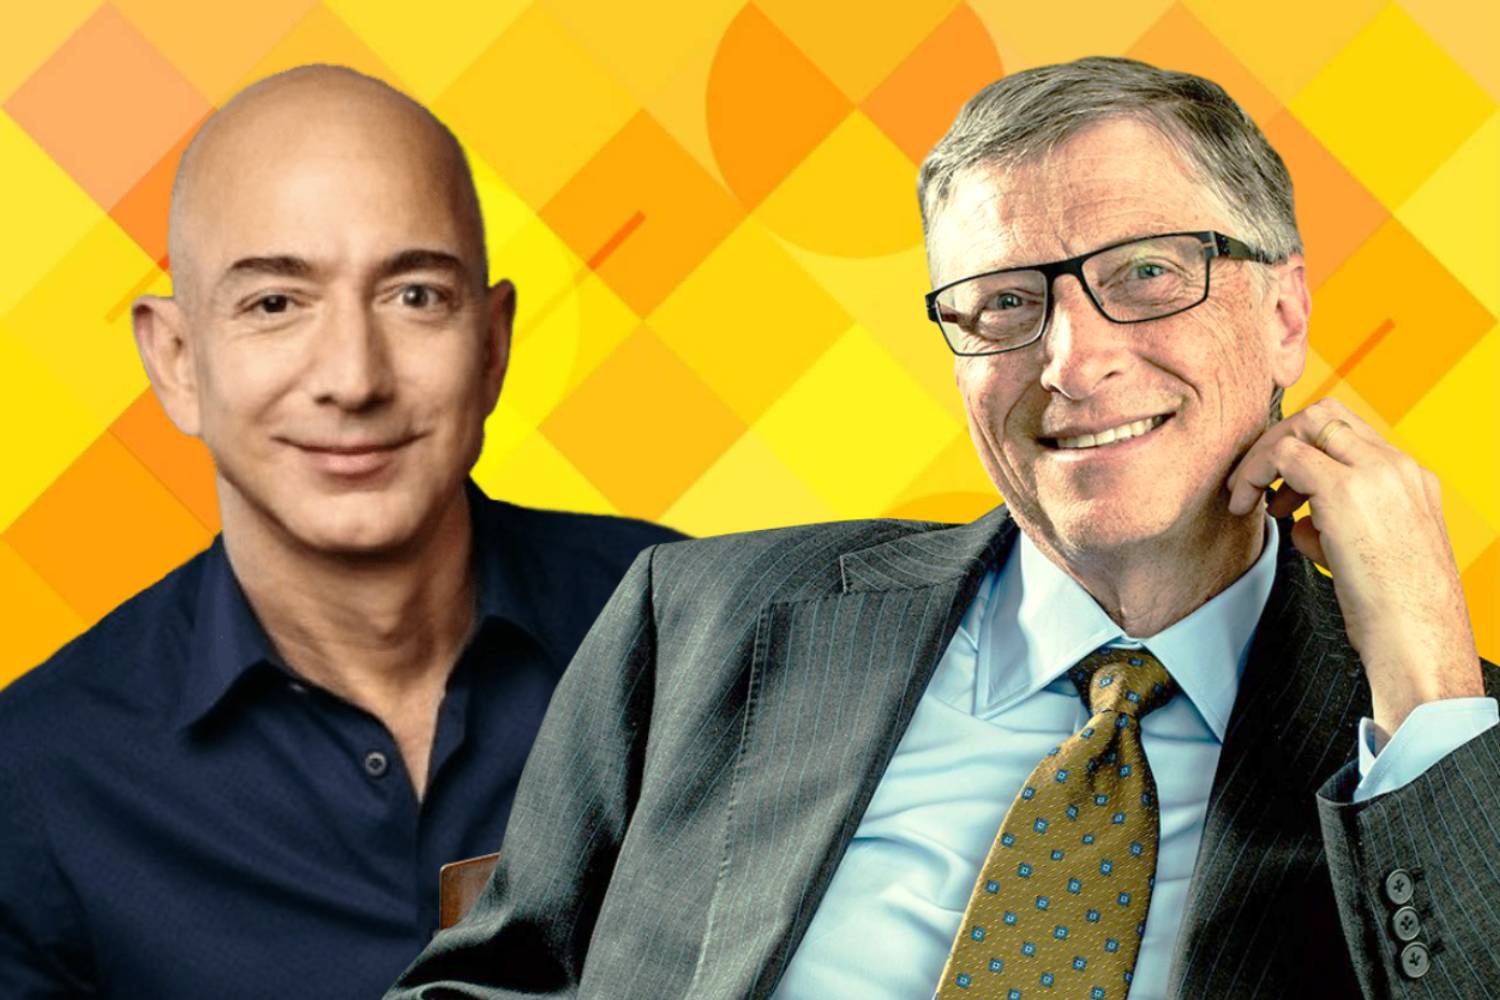 Tỷ phú Jeff Bezos và Bill Gates khác thế nào trong... cách chọn người tình? - 1